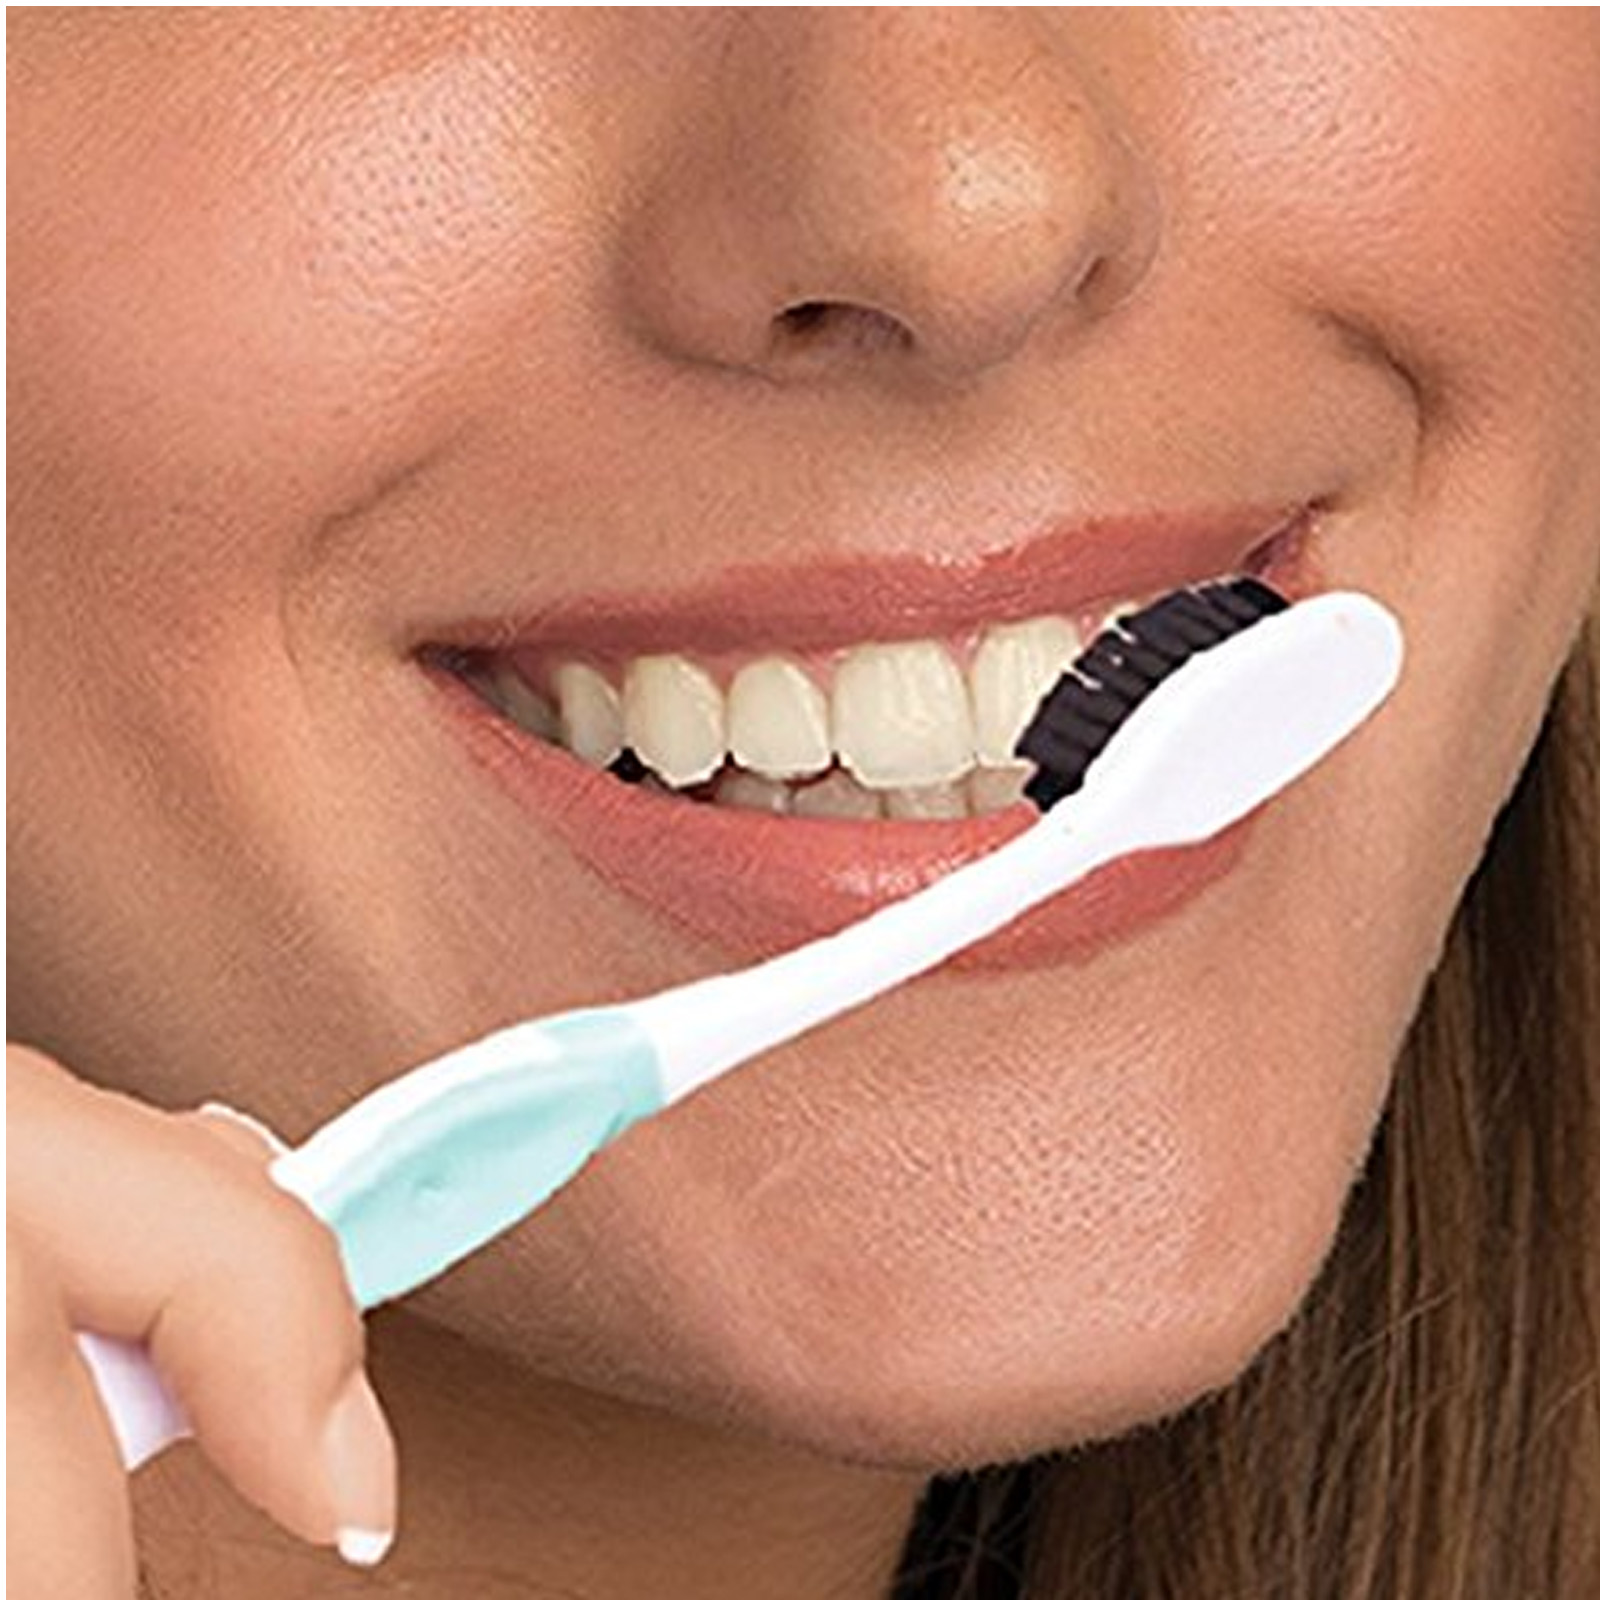 Методы отбеливания зубов. Отбеливание зубов. Домашнее отбеливание зубов. Аппаратное отбеливание зубов. Паста для отбеливания зубов в стоматологии.